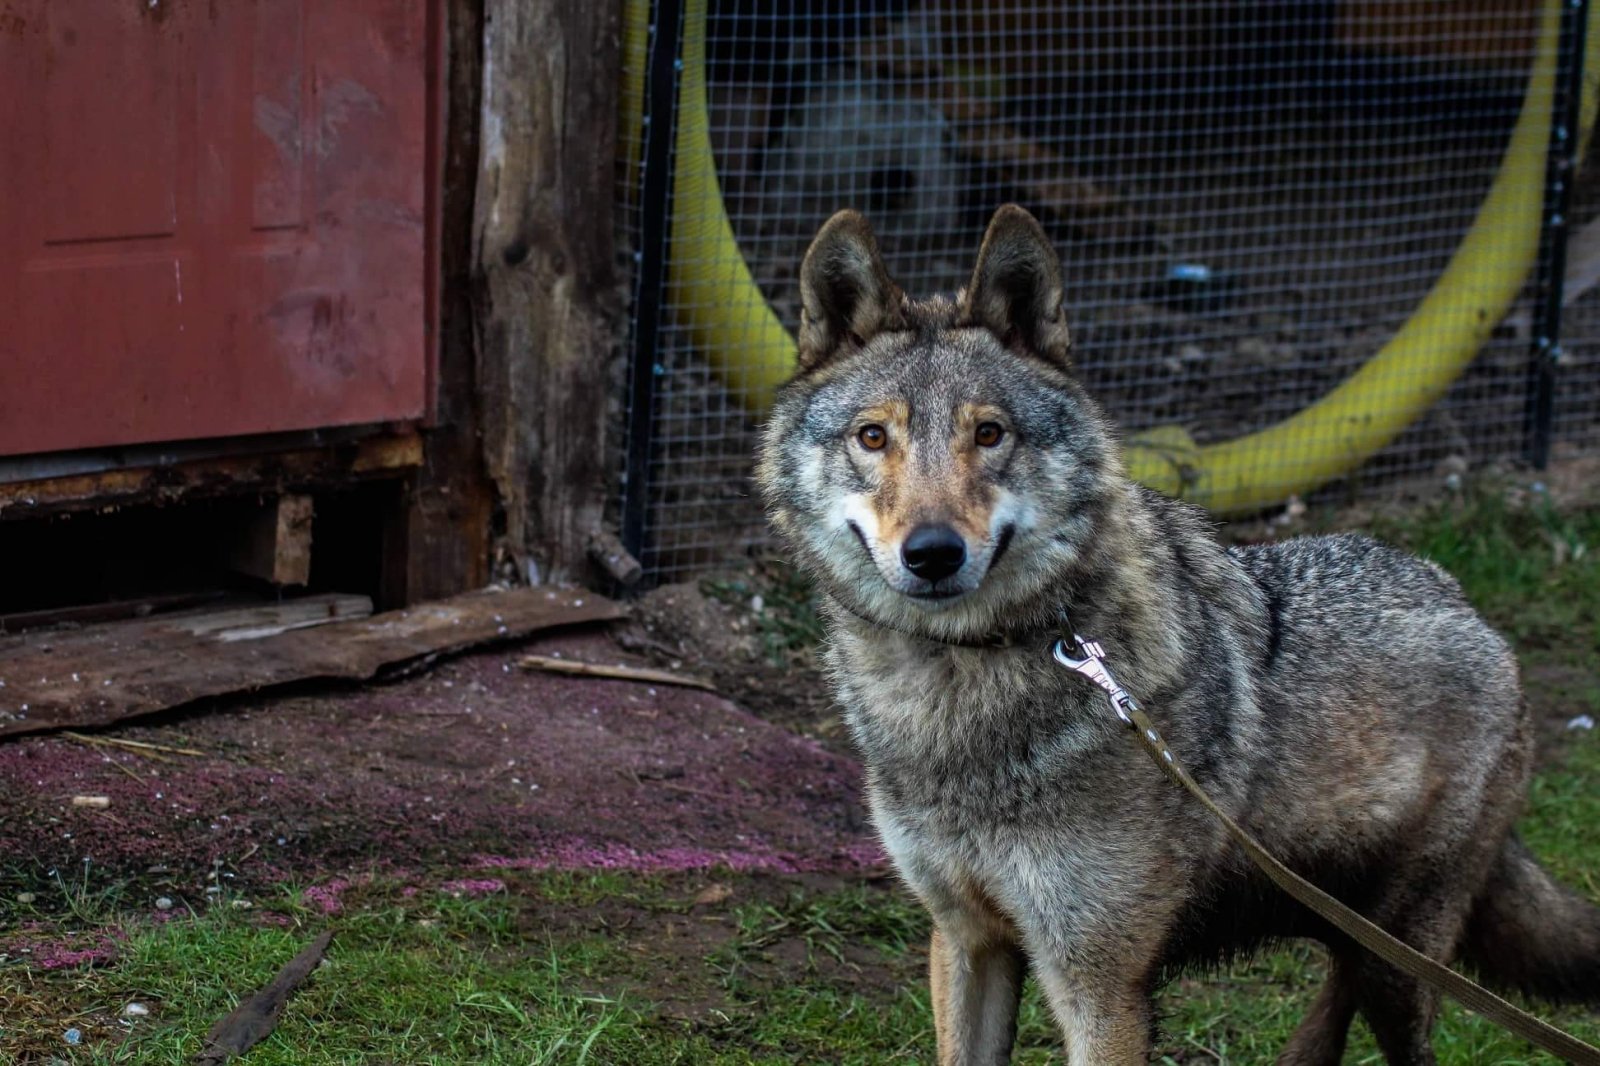 Jau šiandien į puikiomis sąlygomis pasižymintį meškų ir vilkų rezervatą Vokietijoje iškeliauja panevėžietės auginta vilko ir šuns hibridė Luna. Aplinkos apsaugos departamentas gyvūną konfiskavo, nes nelaisvėje laikyti, veisti, dauginti laukinių gyvūnų hibridus, jų palikuonis ir gyvūnus, kurių veisime naudoti hibridai, draudžiama.